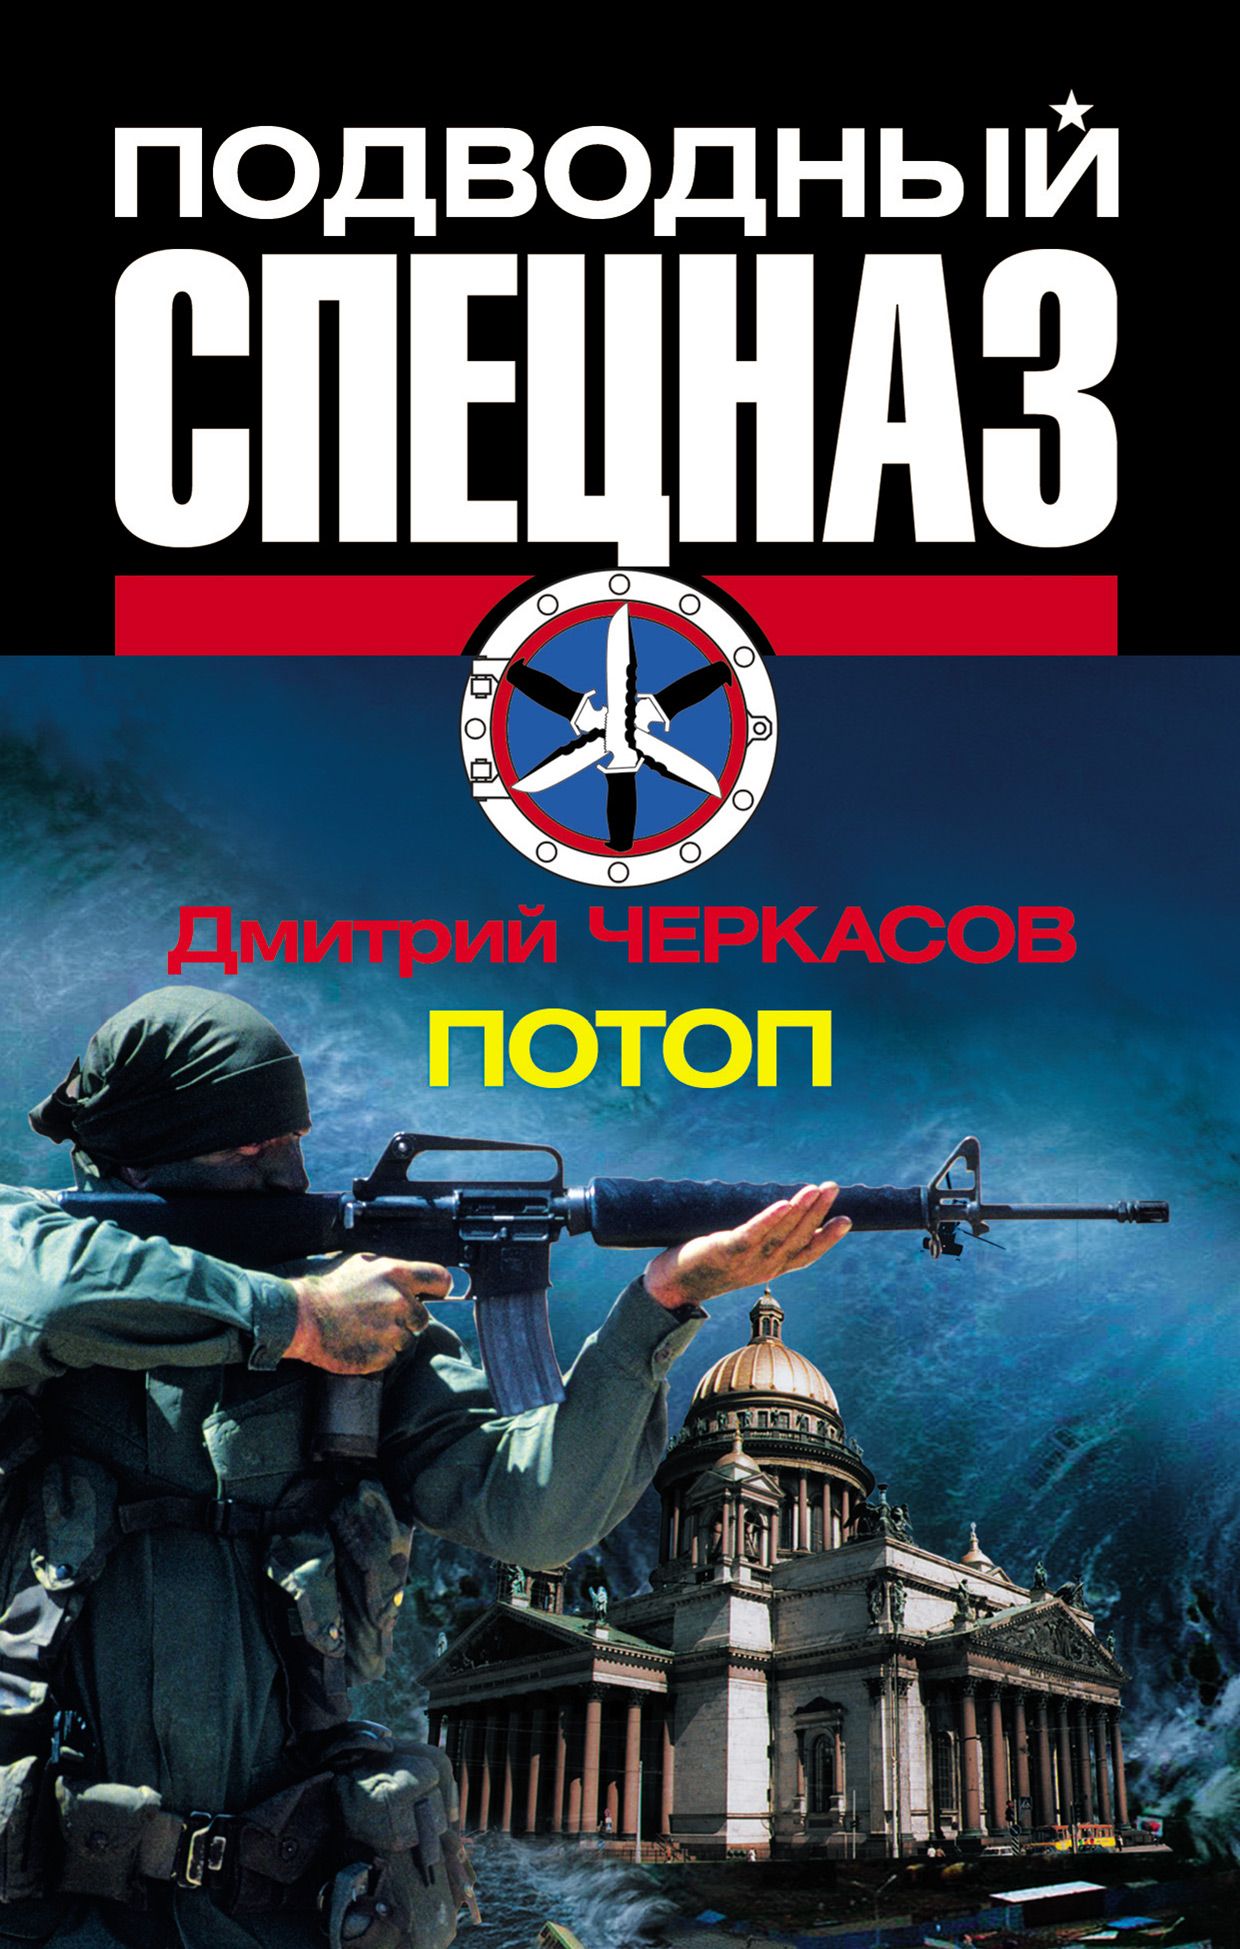 Книга дмитрия черкасова. Книги про подводный спецназ. Черкасов книги.